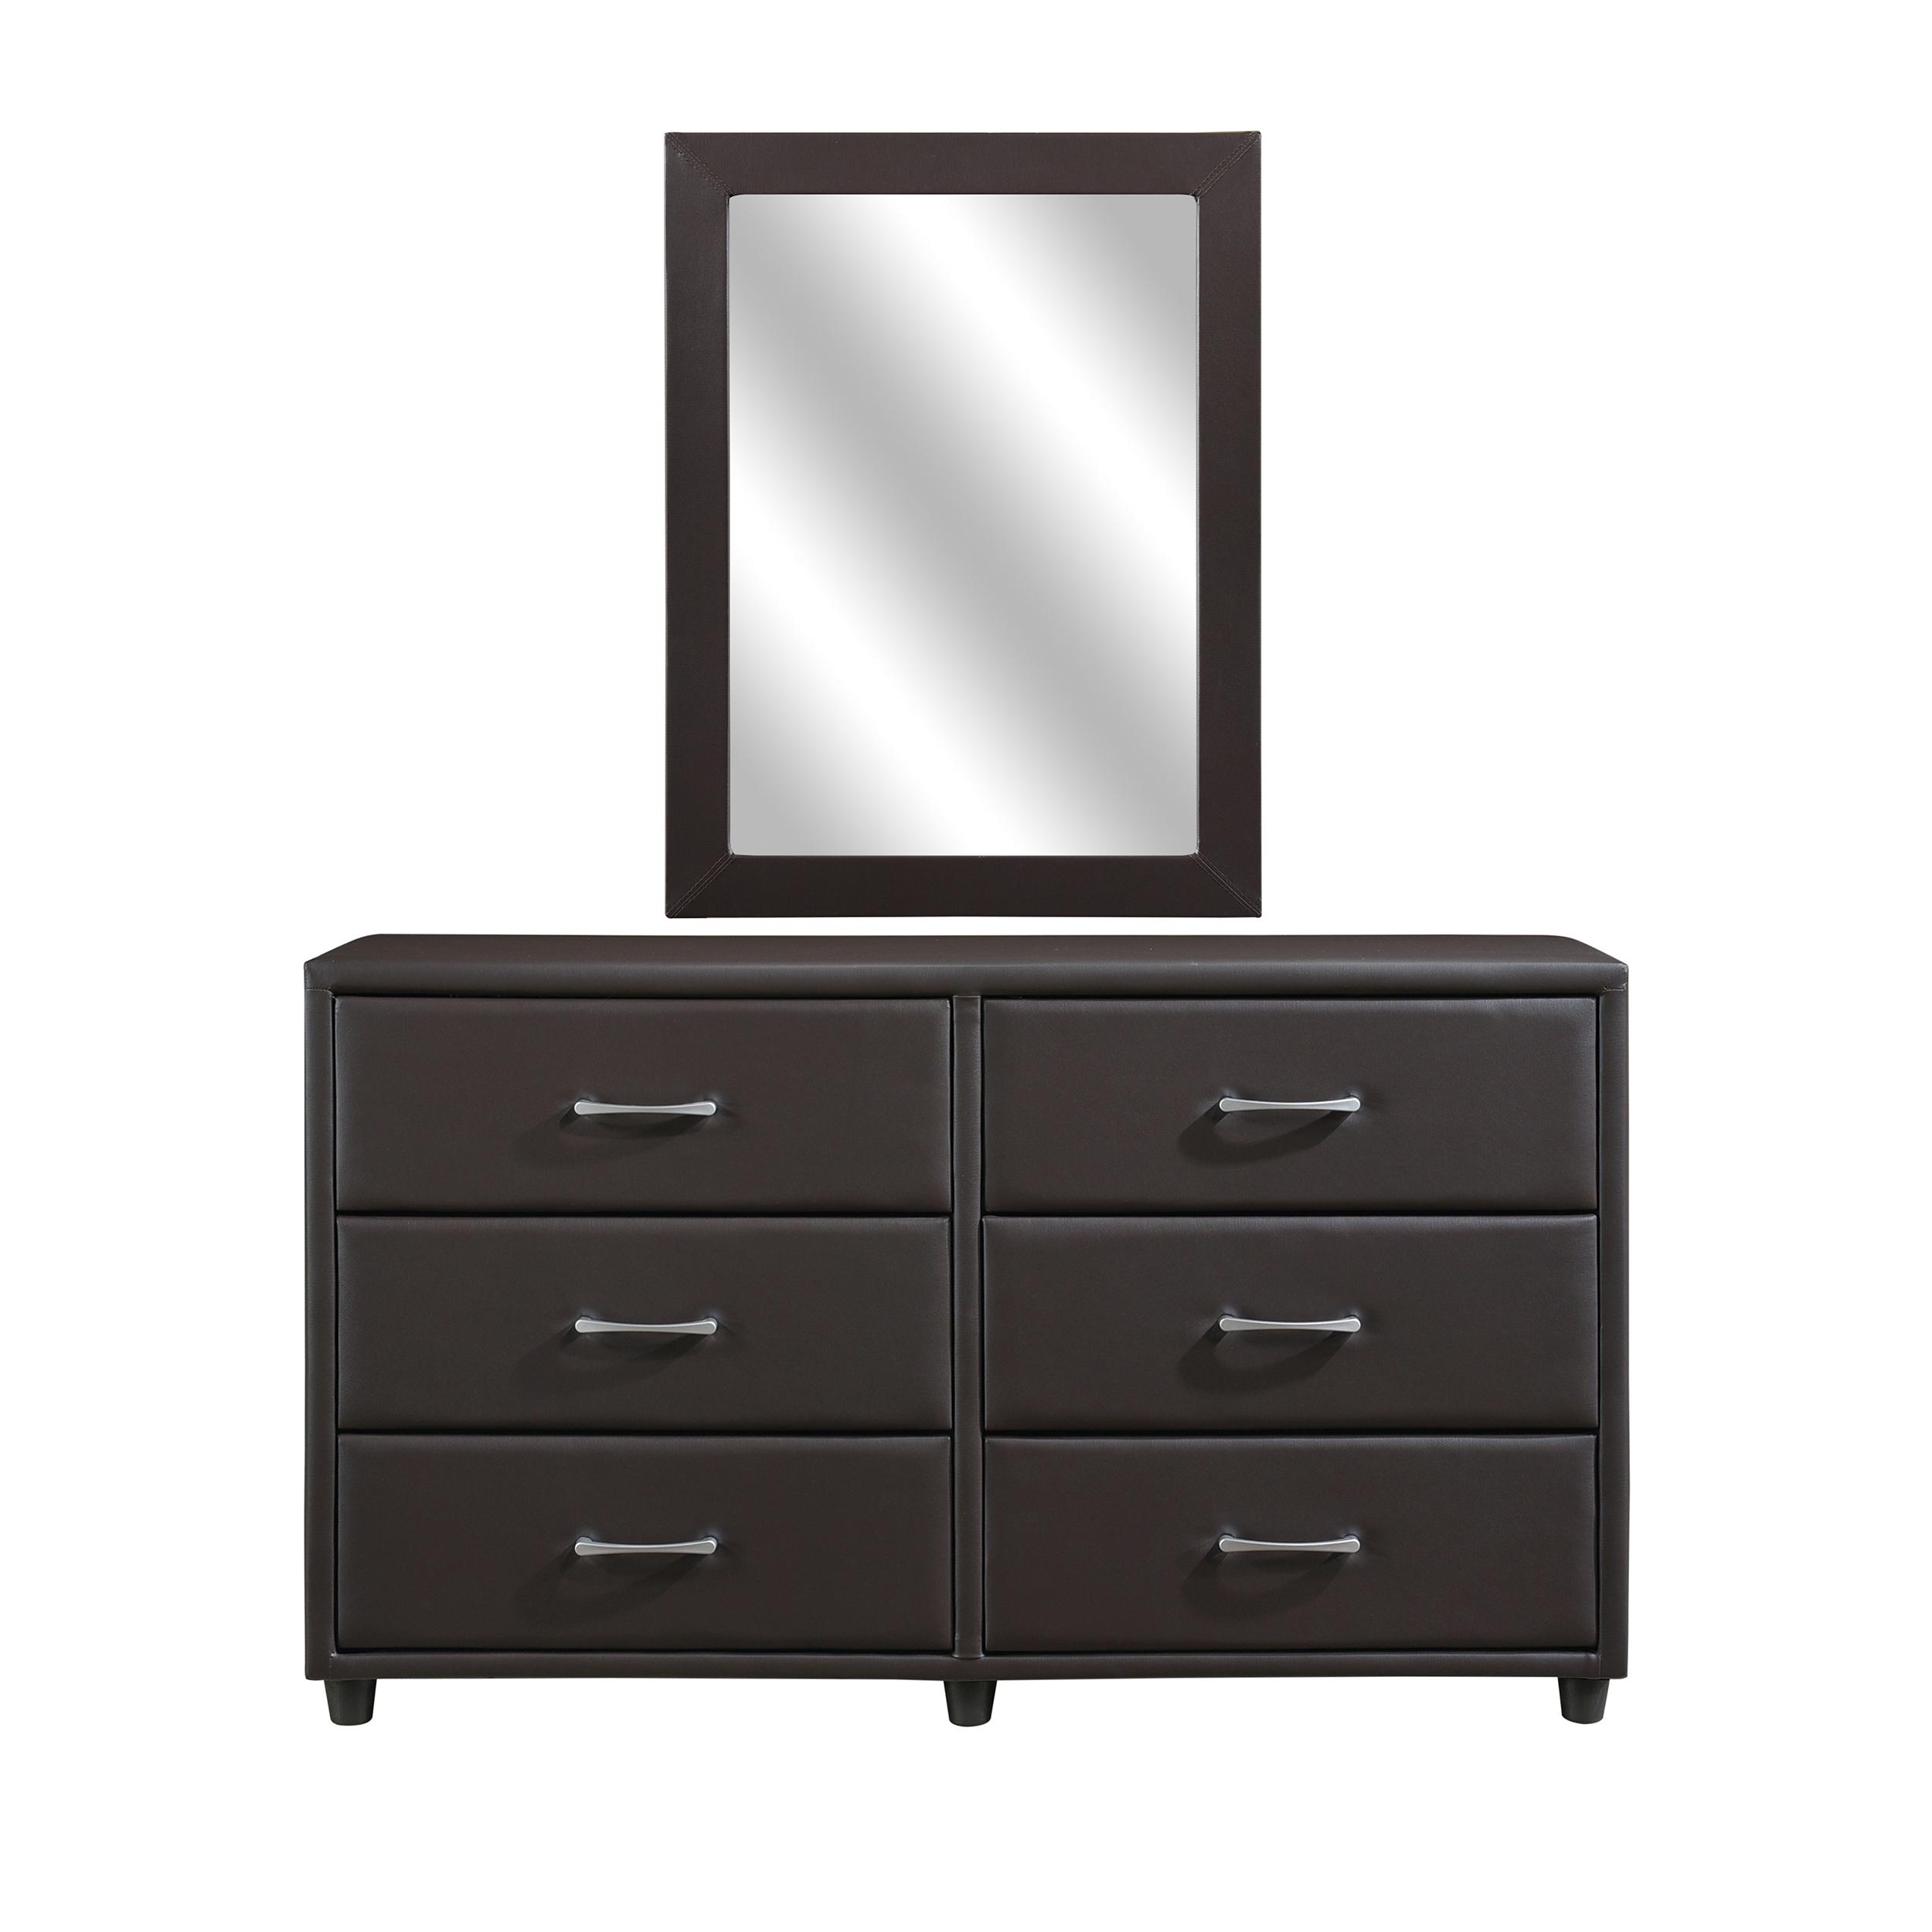 Contemporary Dresser w/Mirror 2220DBR-5*6-2PC Lorenzi 2220DBR-5*6-2PC in Dark Brown Faux Leather